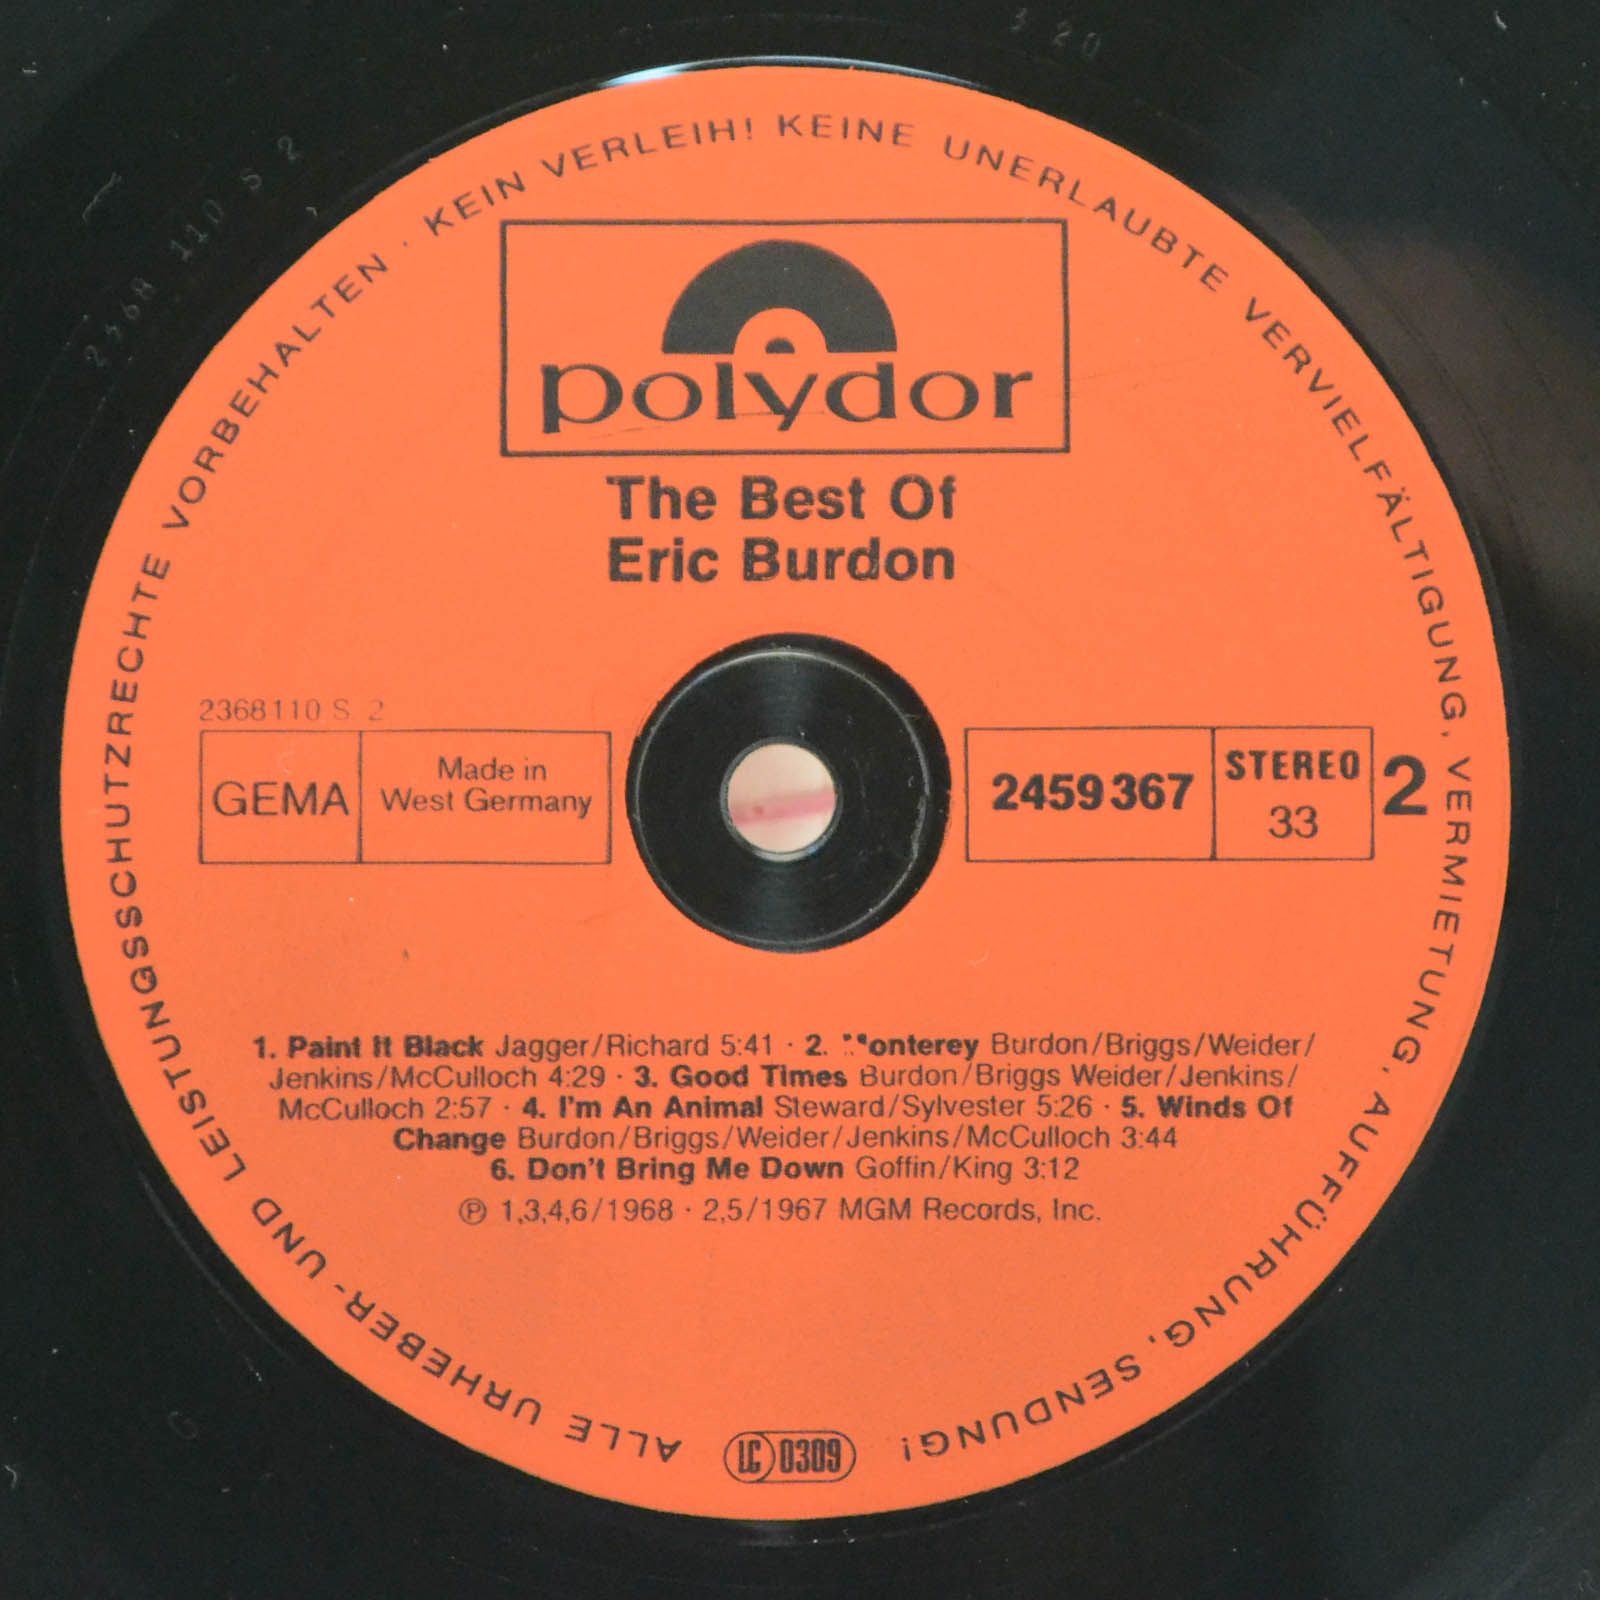 Eric Burdon — The Best Of Eric Burdon, 1974